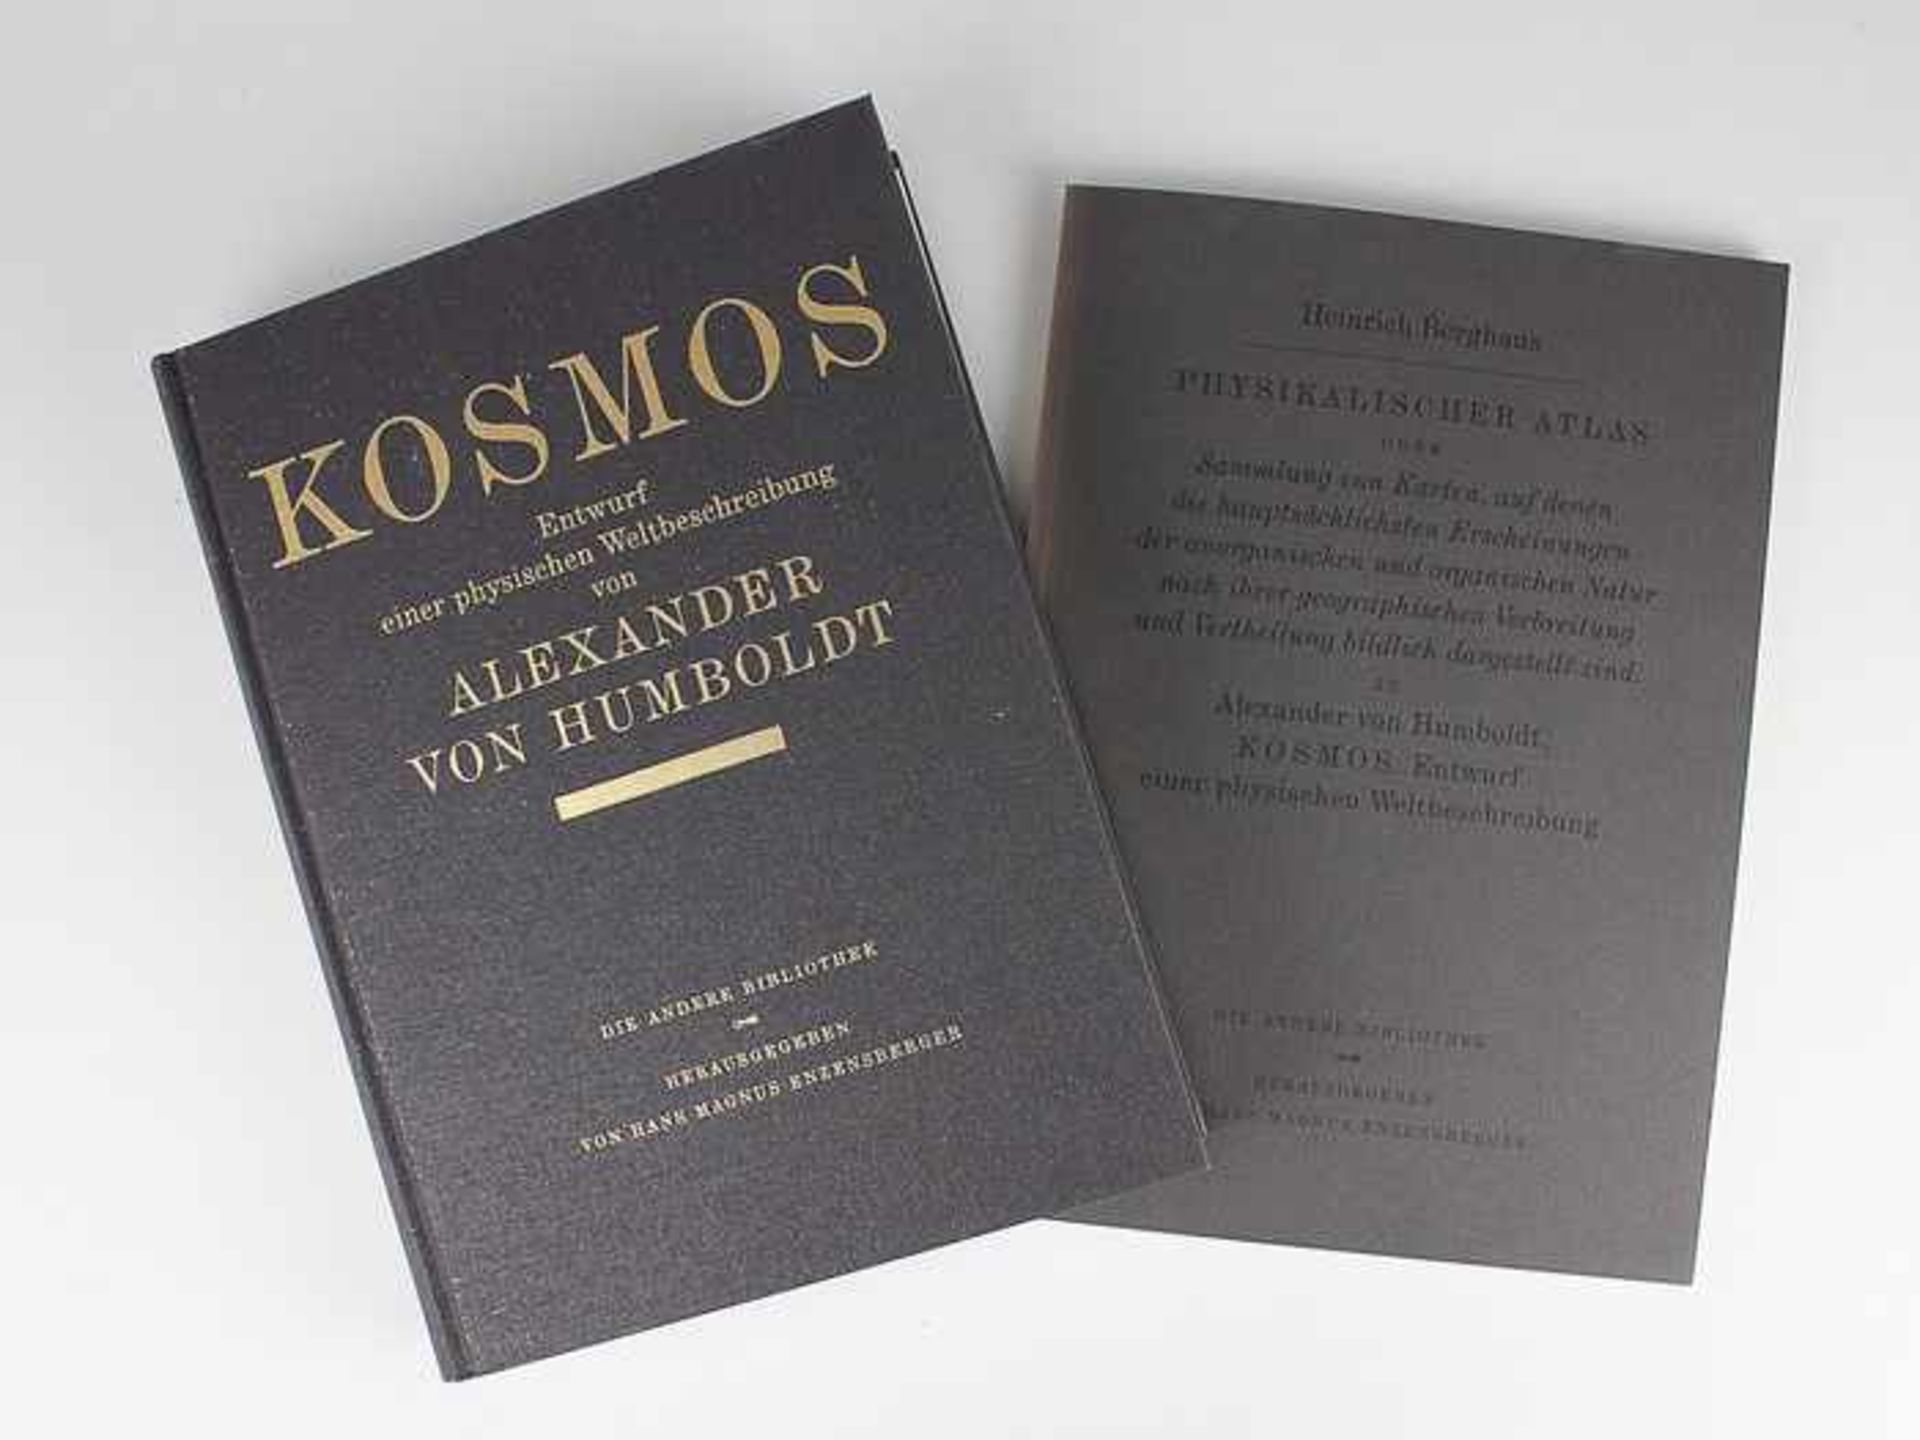 Humboldt, Alexander von"Kosmos - Entwurf einer physischen Weltbeschreibung", Frankfurt a.M. Eichborn